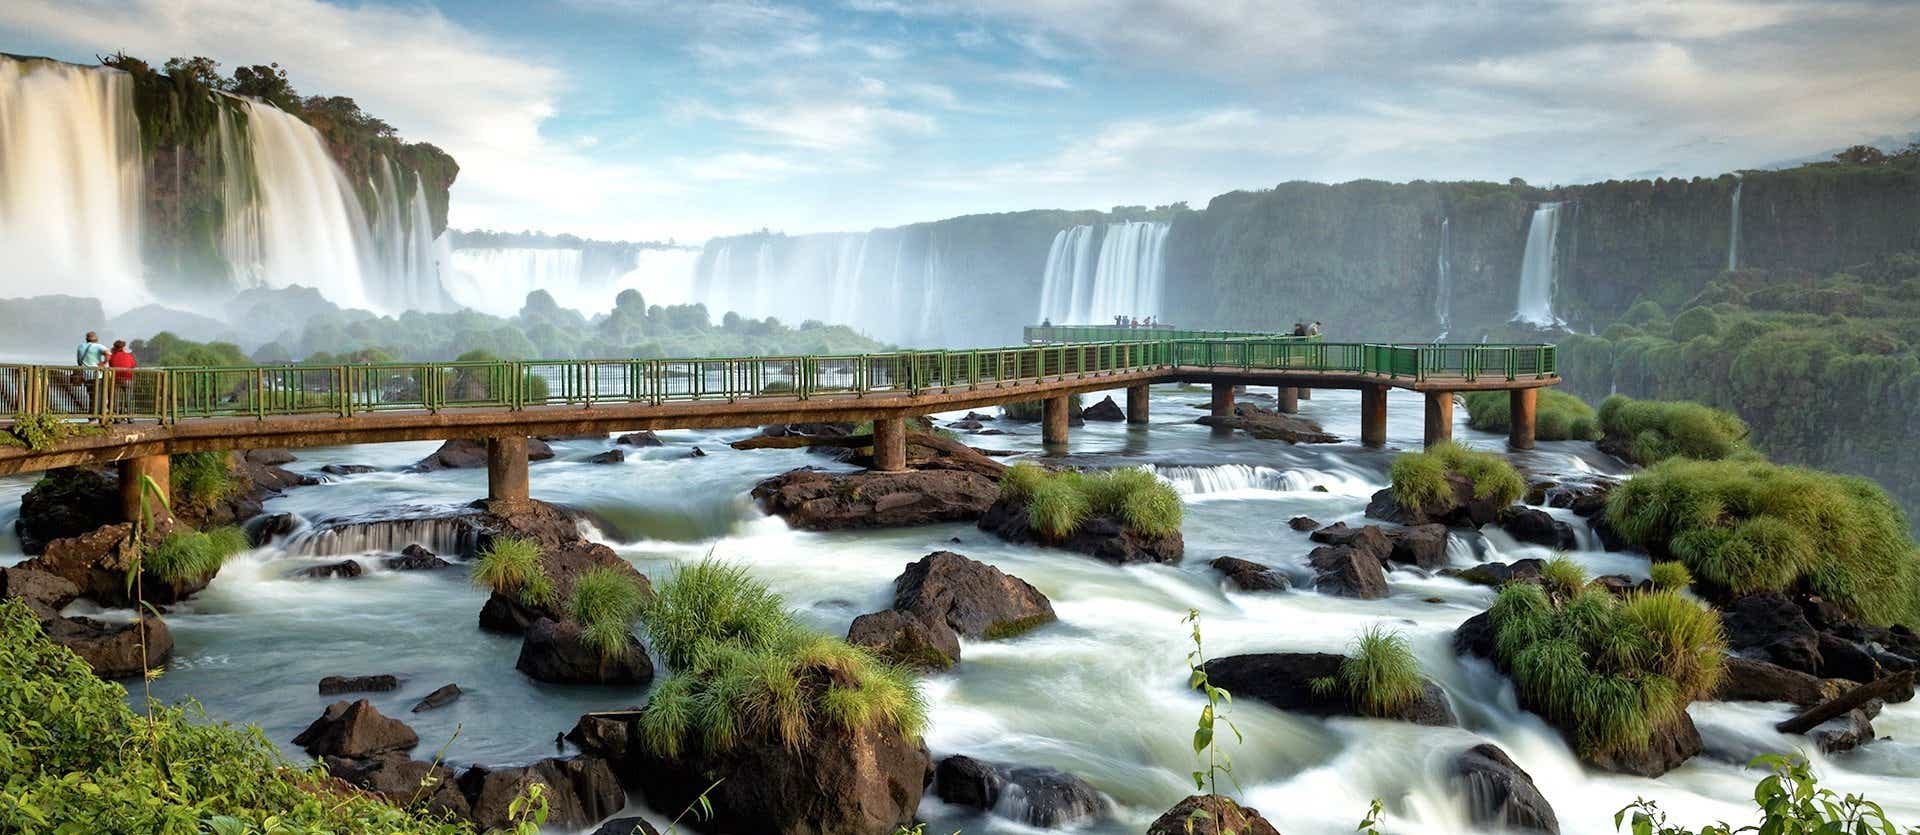 Cataratas de Iguazú <span class="iconos separador"></span> Brasil